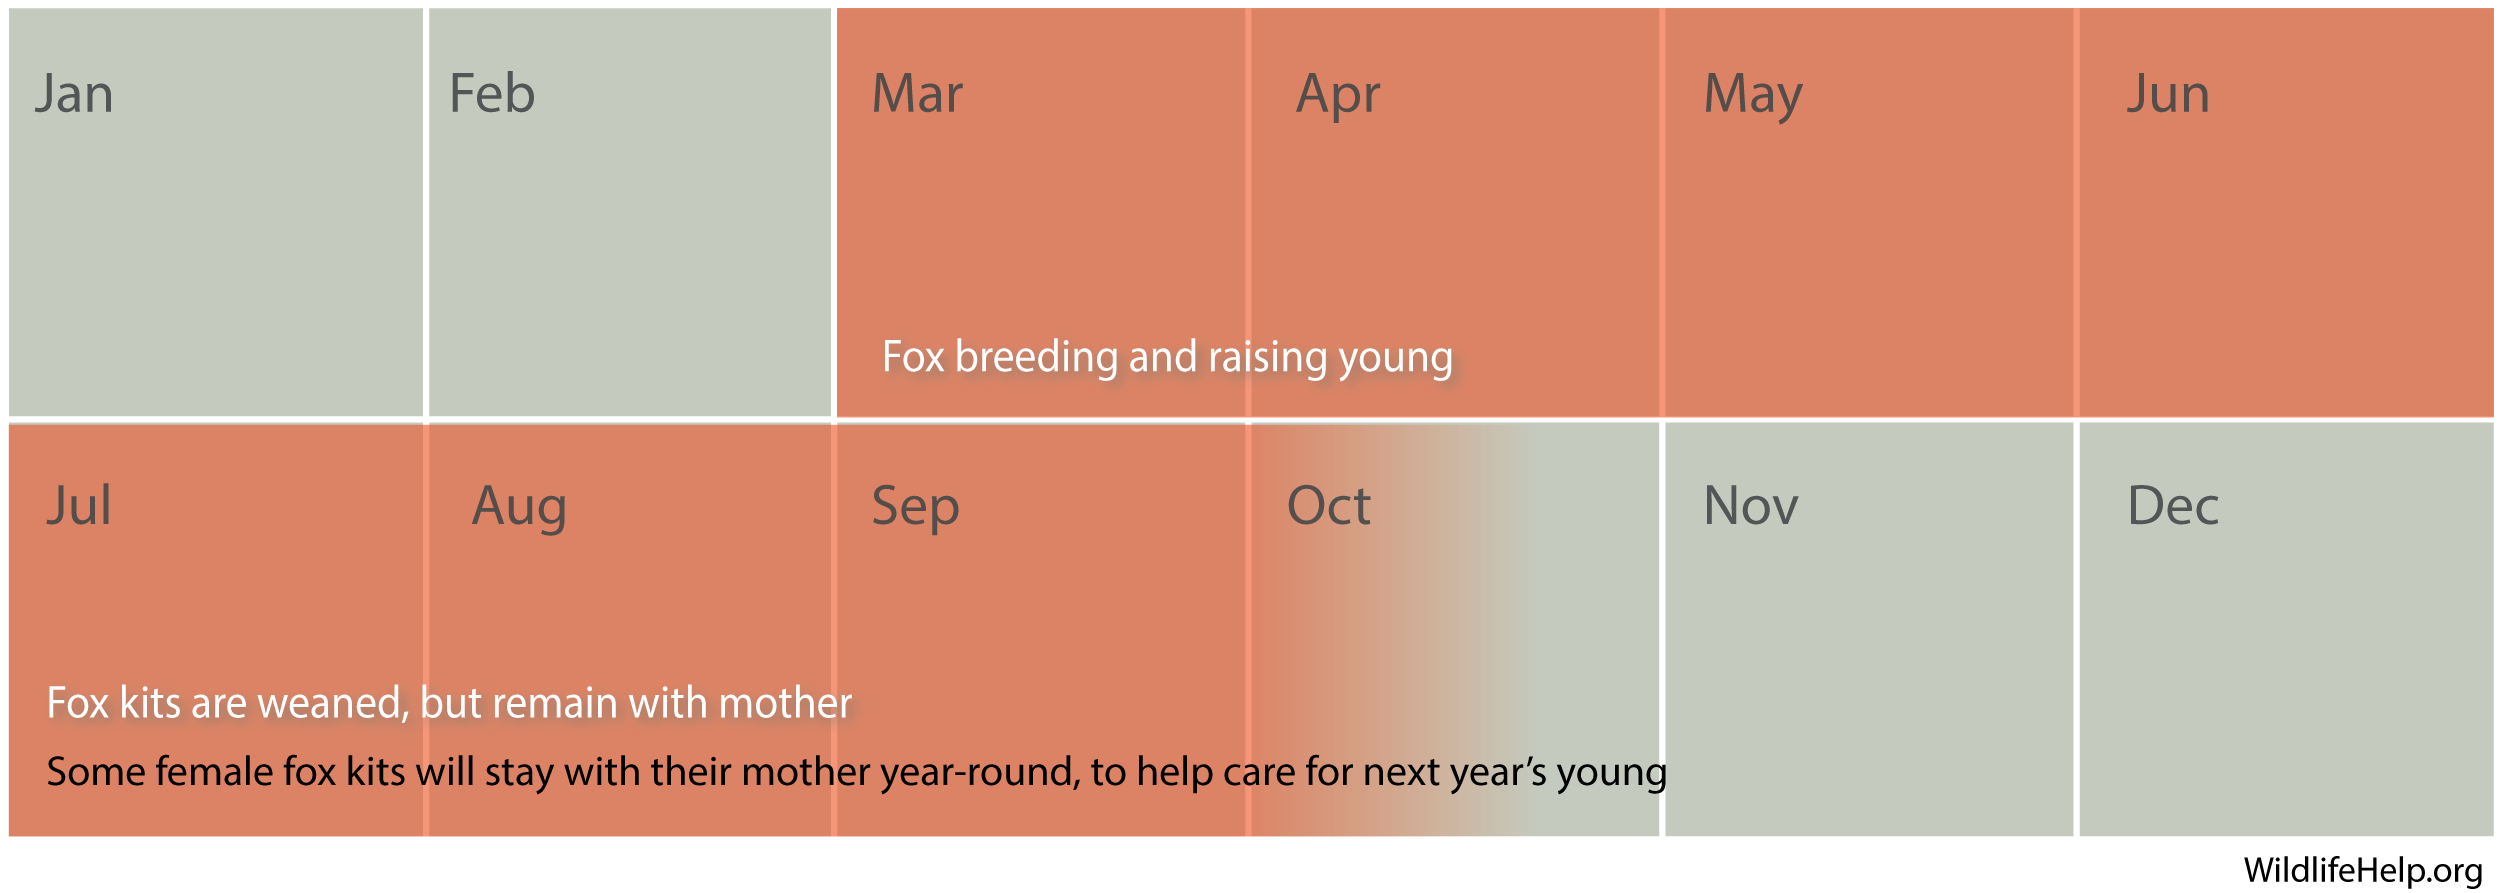 Diagram - fox breeding season